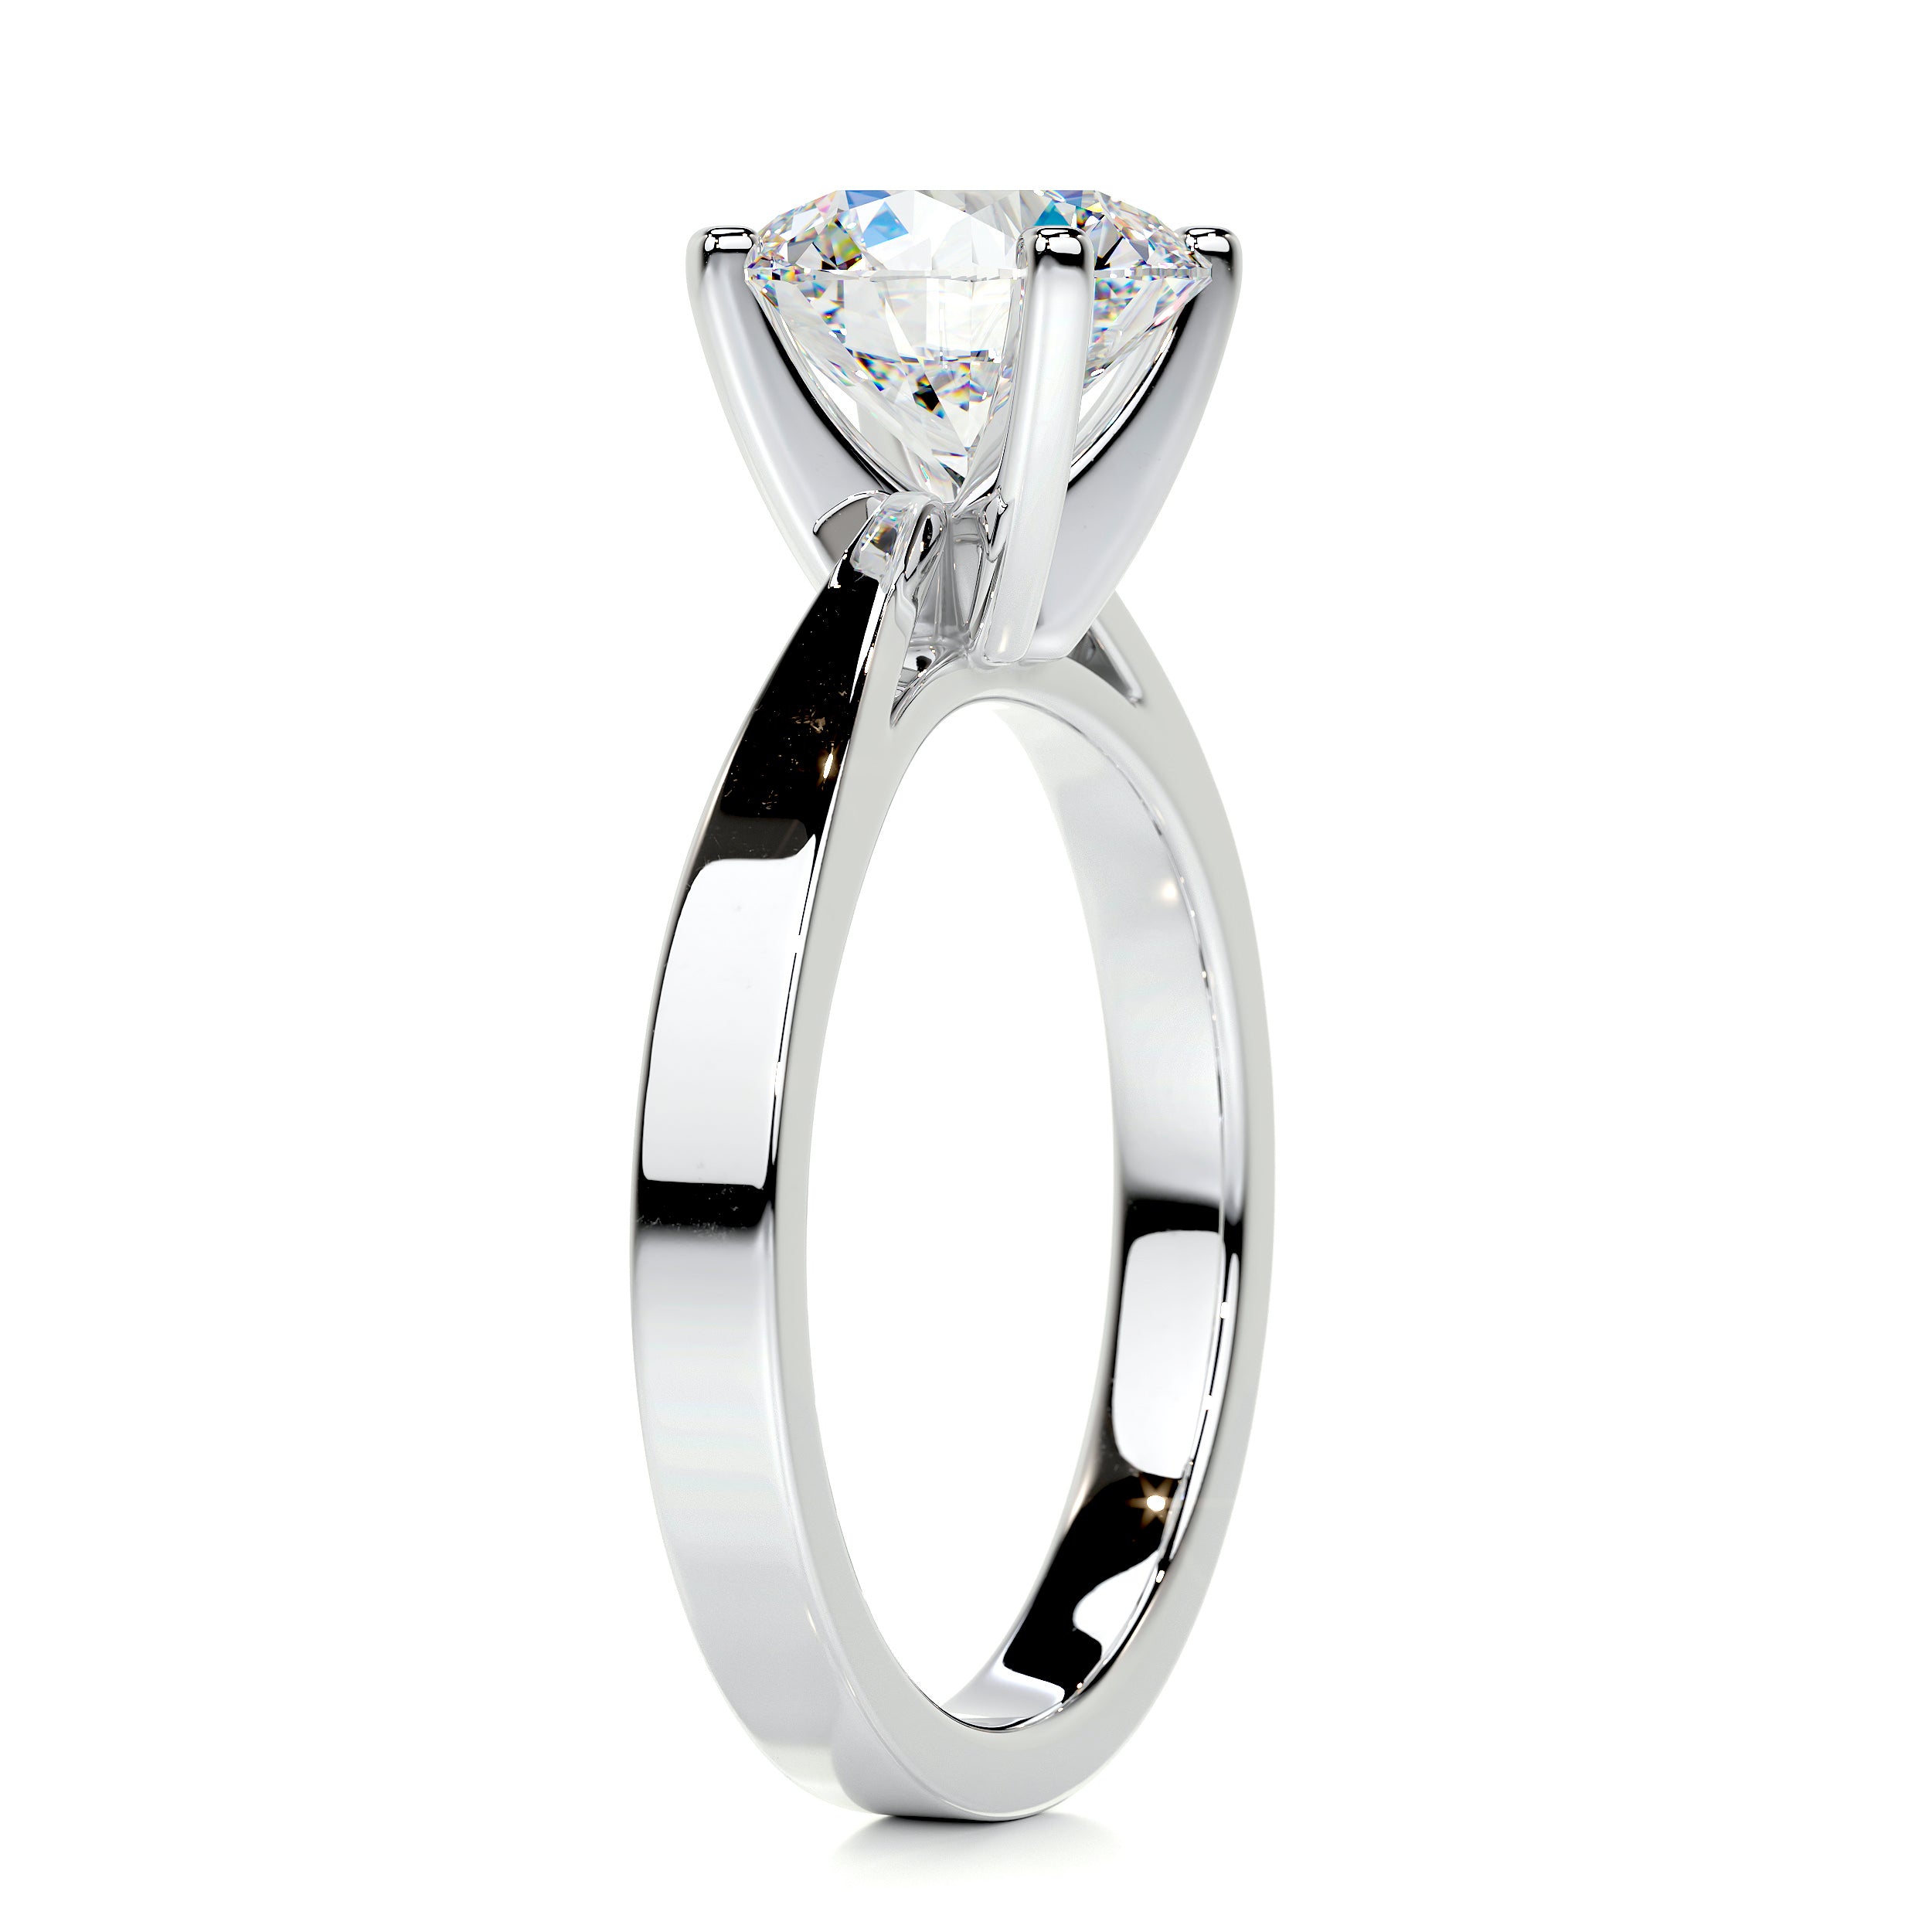 Diana Moissanite Ring   (2.5 Carat) -Platinum